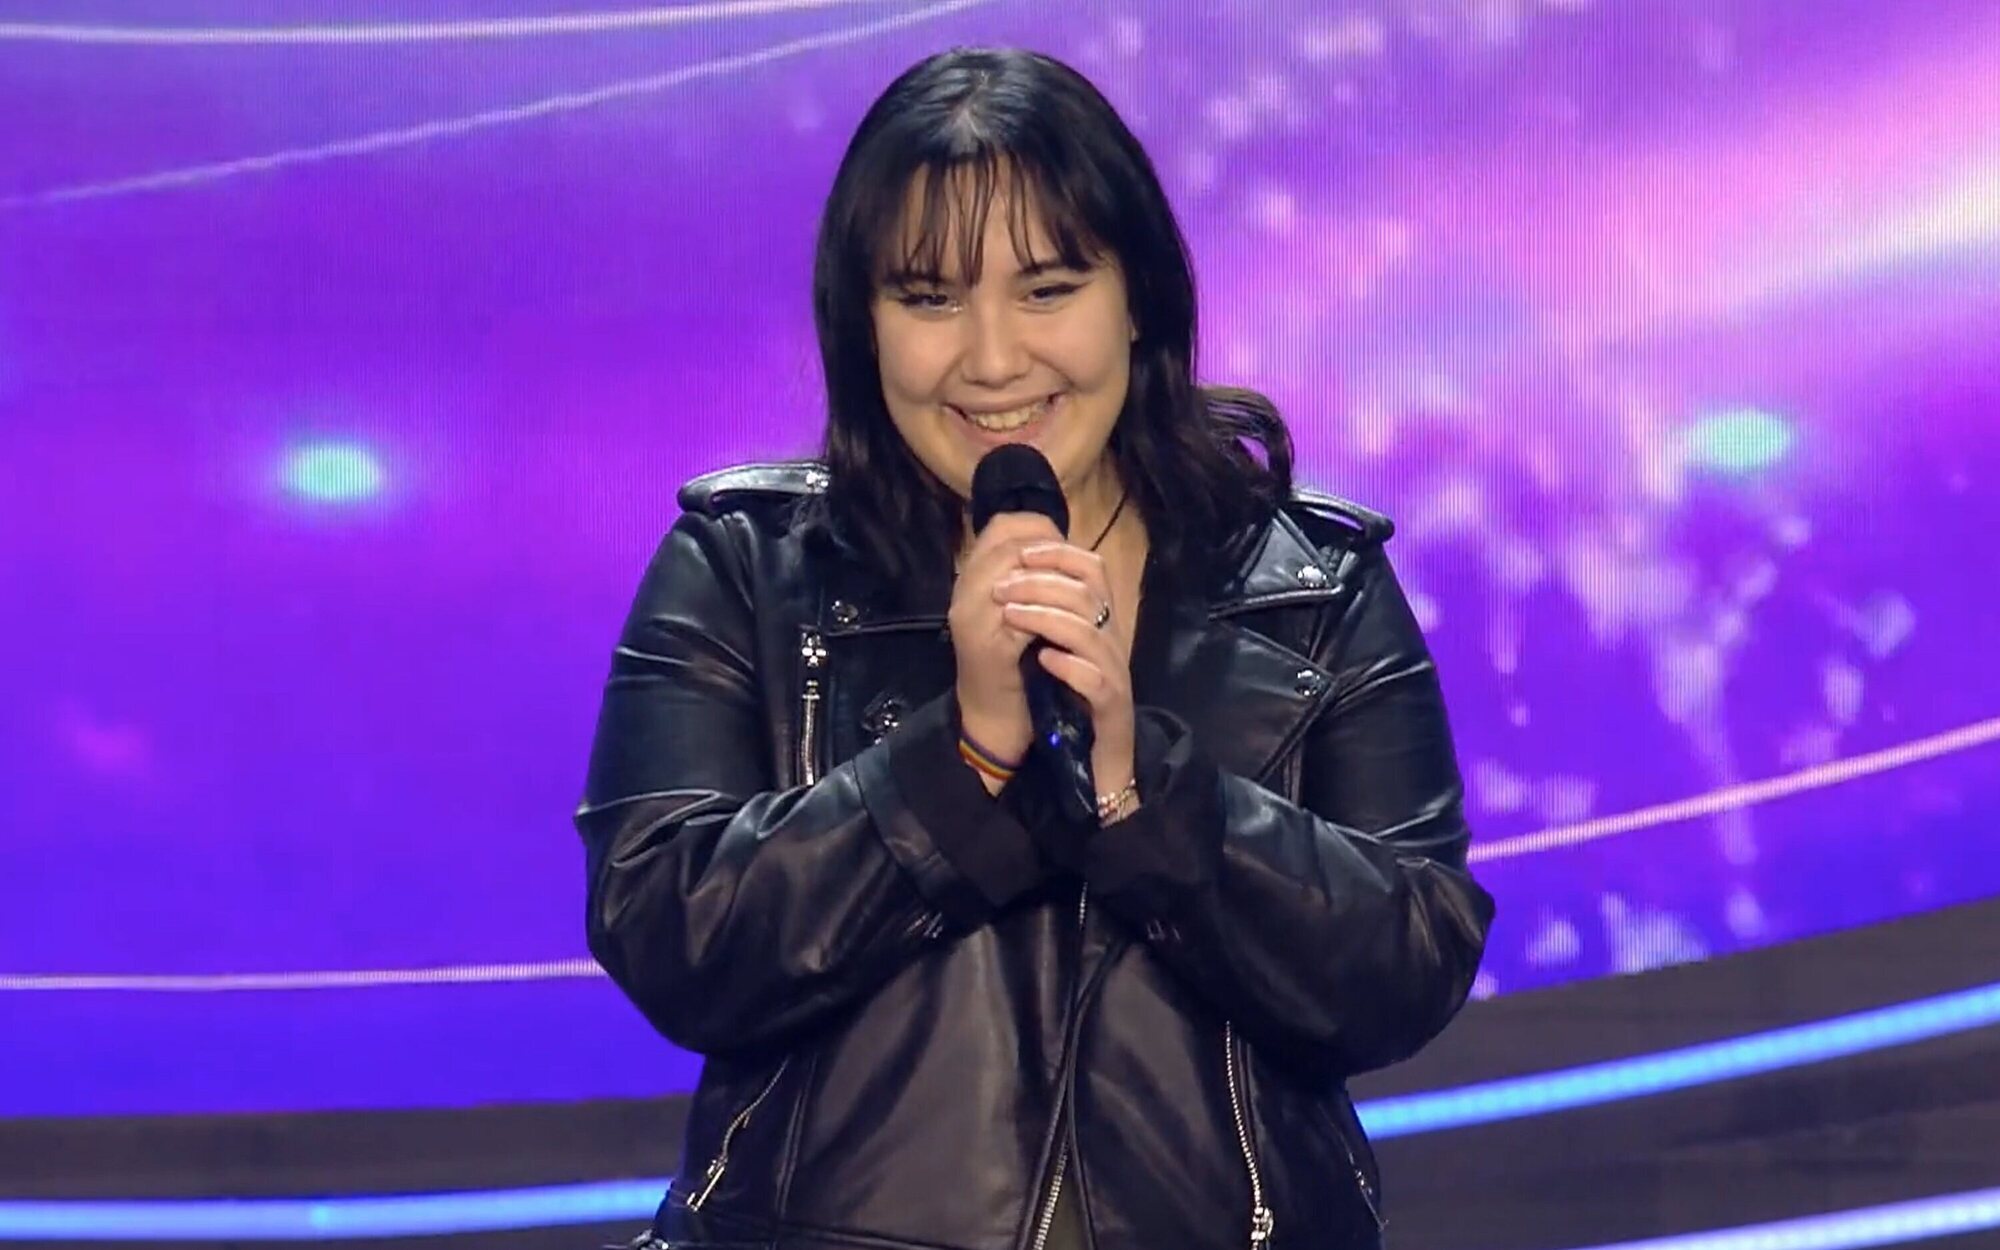 El equipo de 'Idol Kids' se suma a Ana Escudero en su mensaje antibullying: "Hay que parar el acoso"